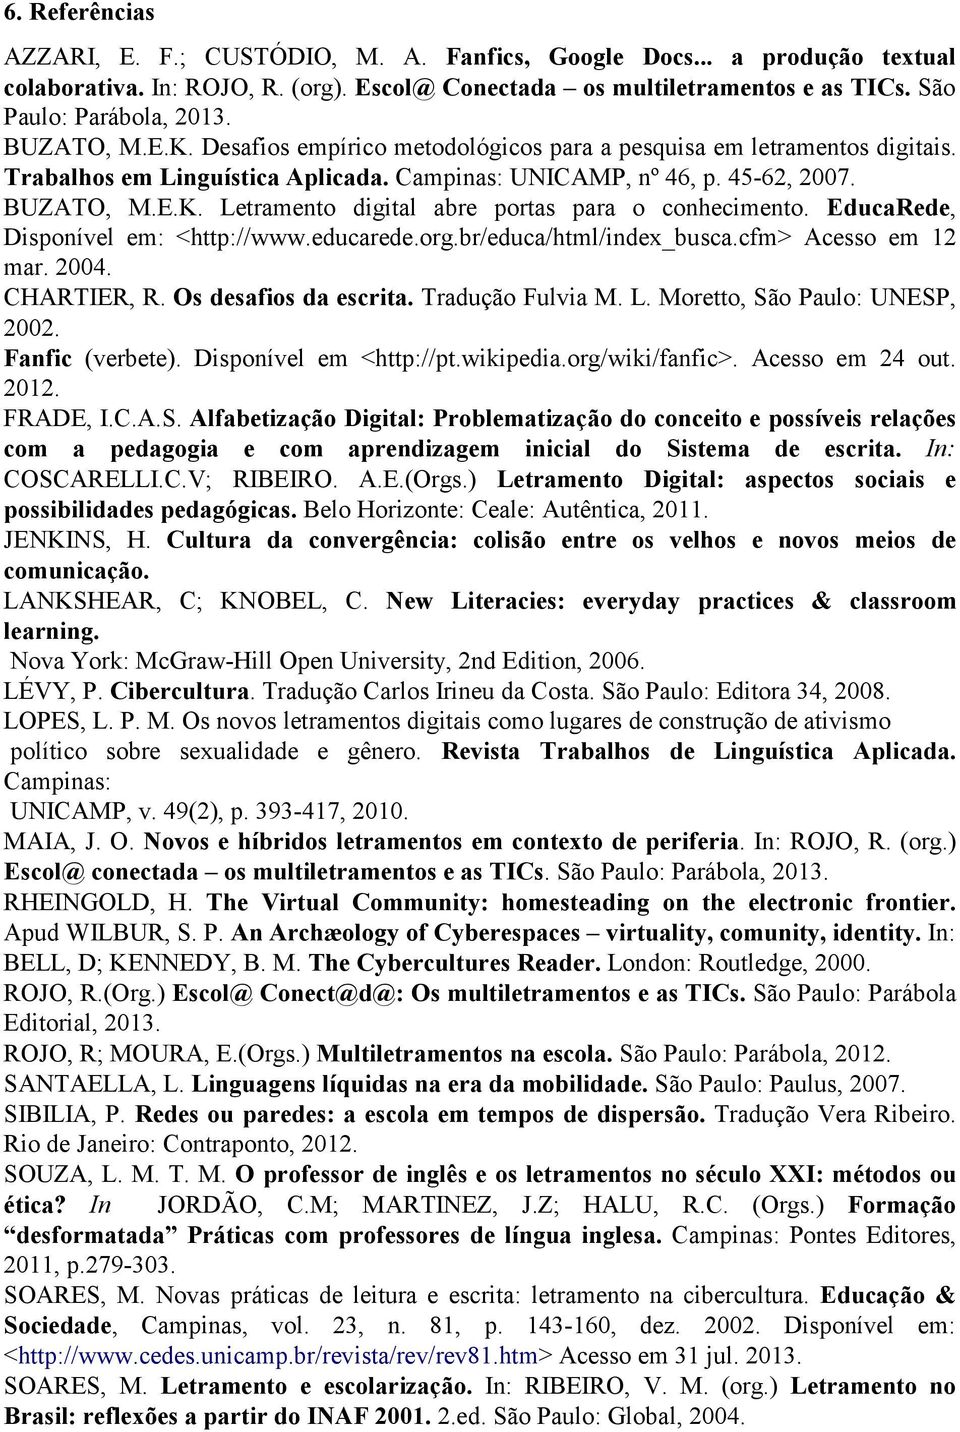 EducaRede, Disponível em: <http://www.educarede.org.br/educa/html/index_busca.cfm> Acesso em 12 mar. 2004. CHARTIER, R. Os desafios da escrita. Tradução Fulvia M. L. Moretto, São Paulo: UNESP, 2002.